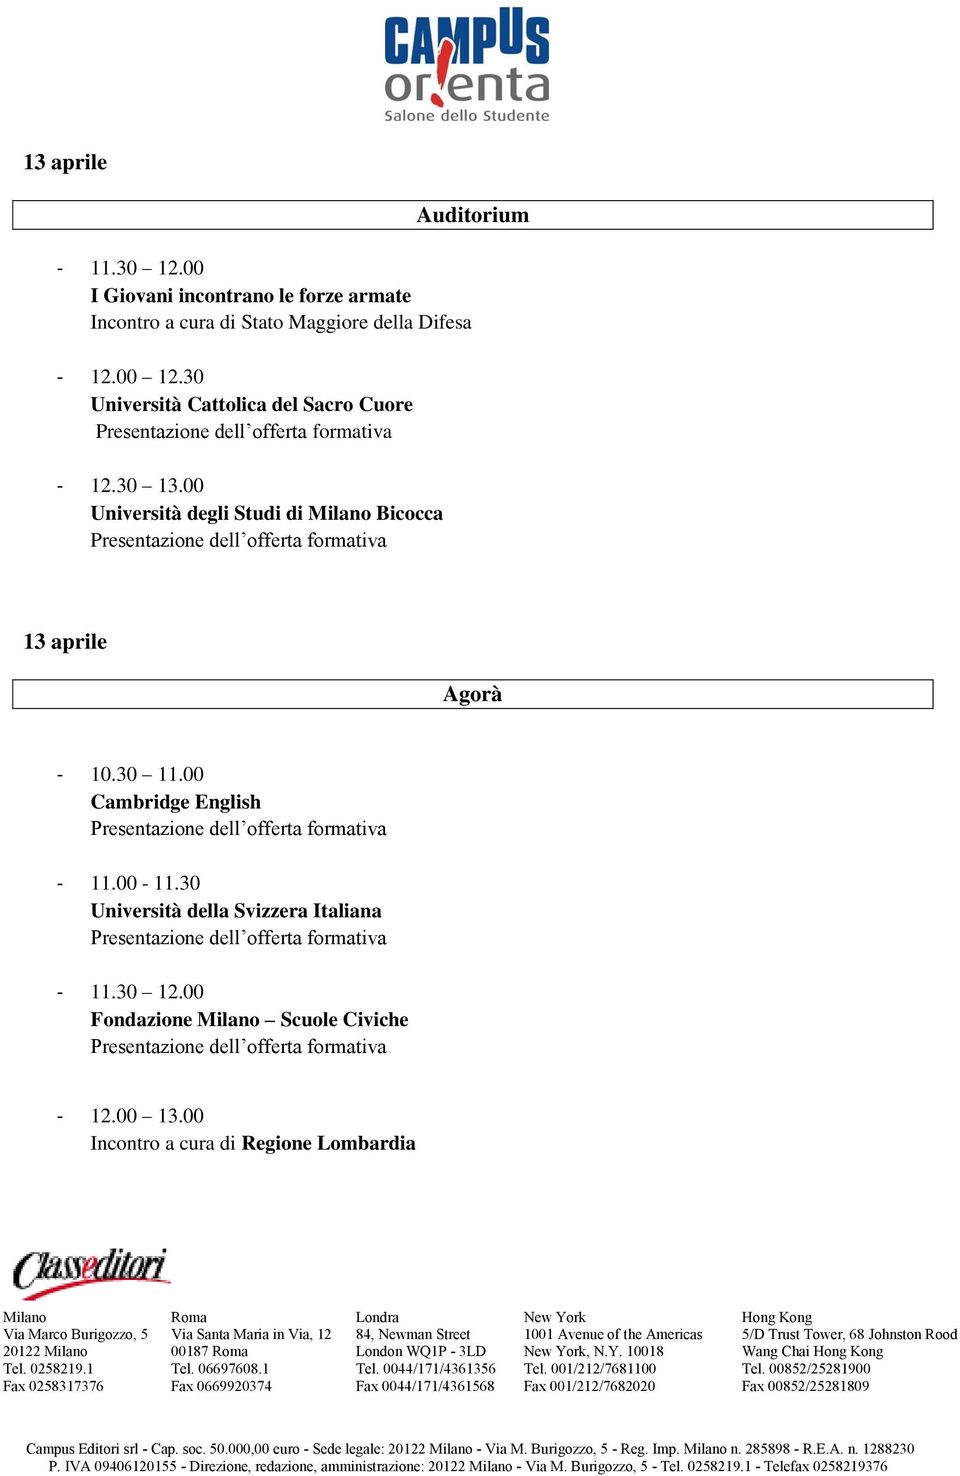 30 Università della Svizzera Italiana - 11.30 12.00 Fondazione Scuole Civiche - 12.00 13.00 Incontro a cura di Regione Lombardia 00187, N.Y.